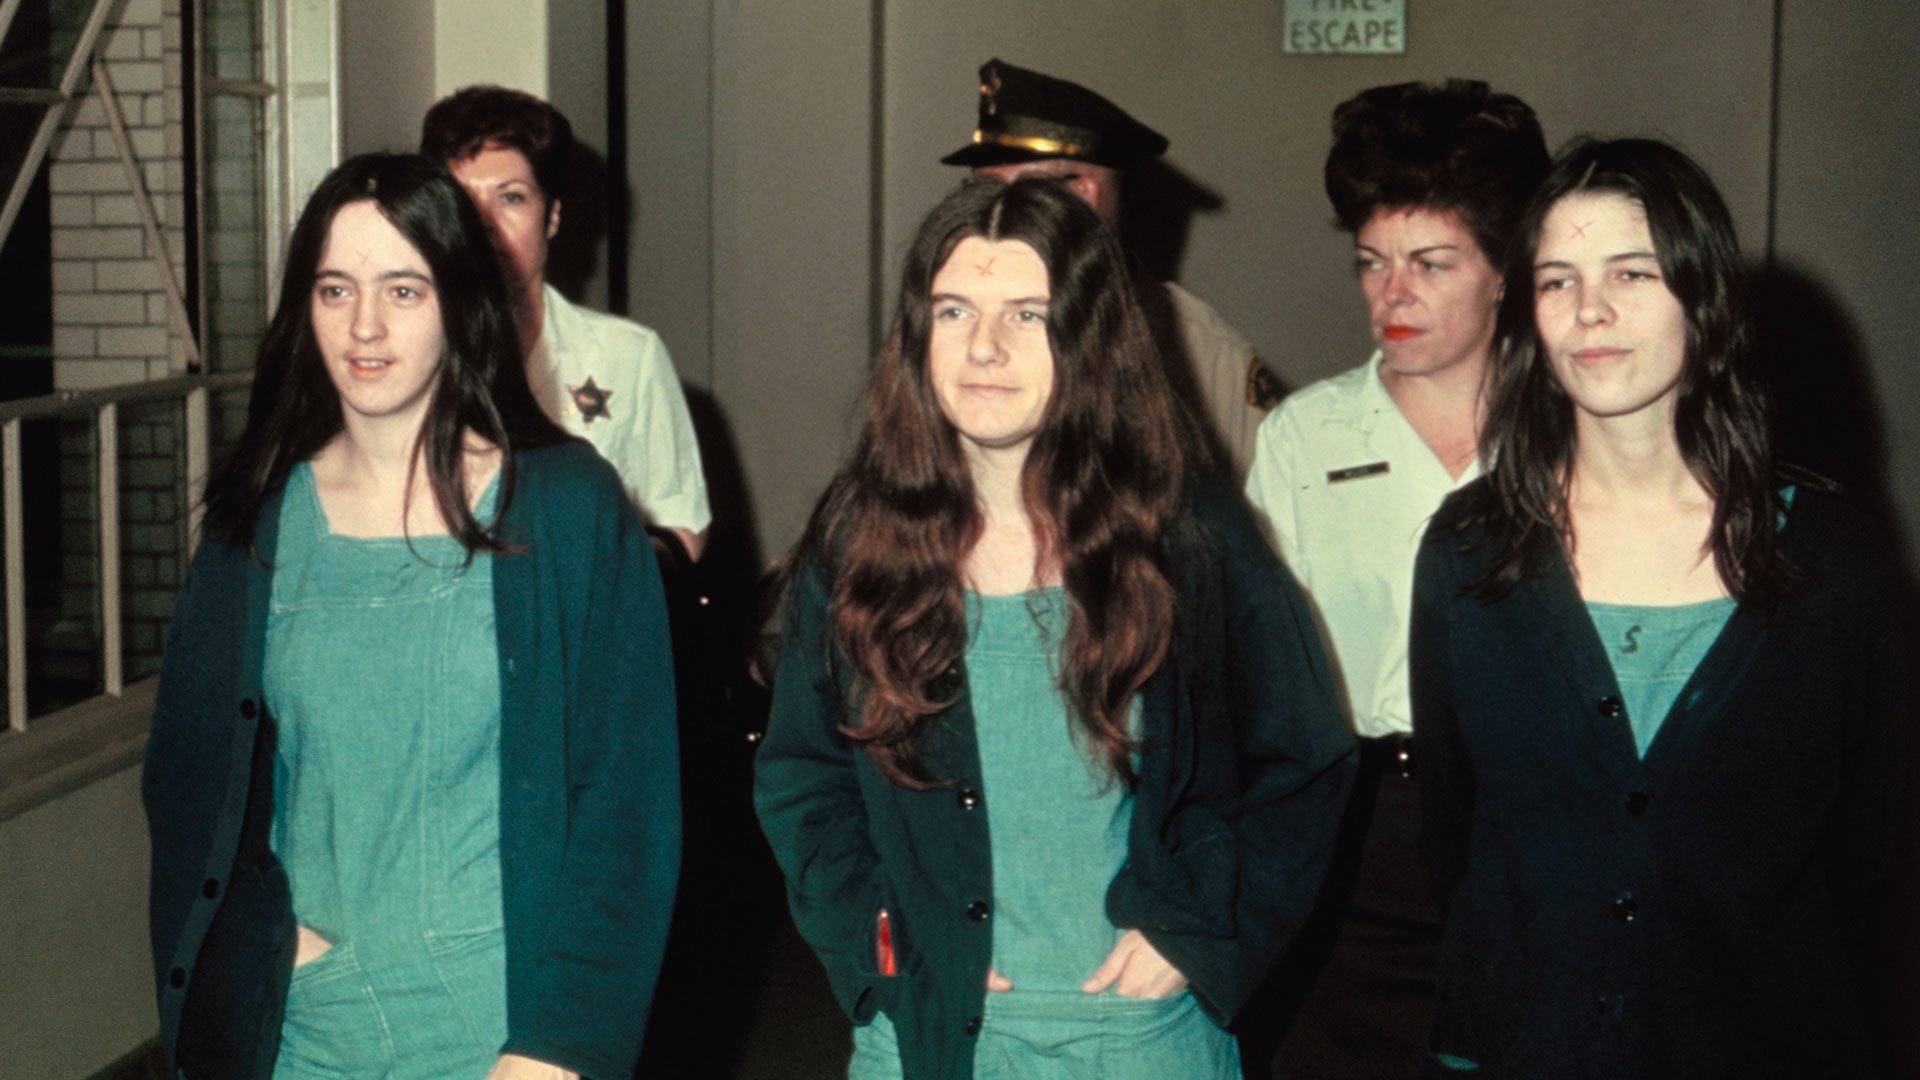 Las mujeres de la "Familia Manson" que participaron en los asesinatos: Susan Atkins, Patricia Krenwinkle y Leslie van Houton